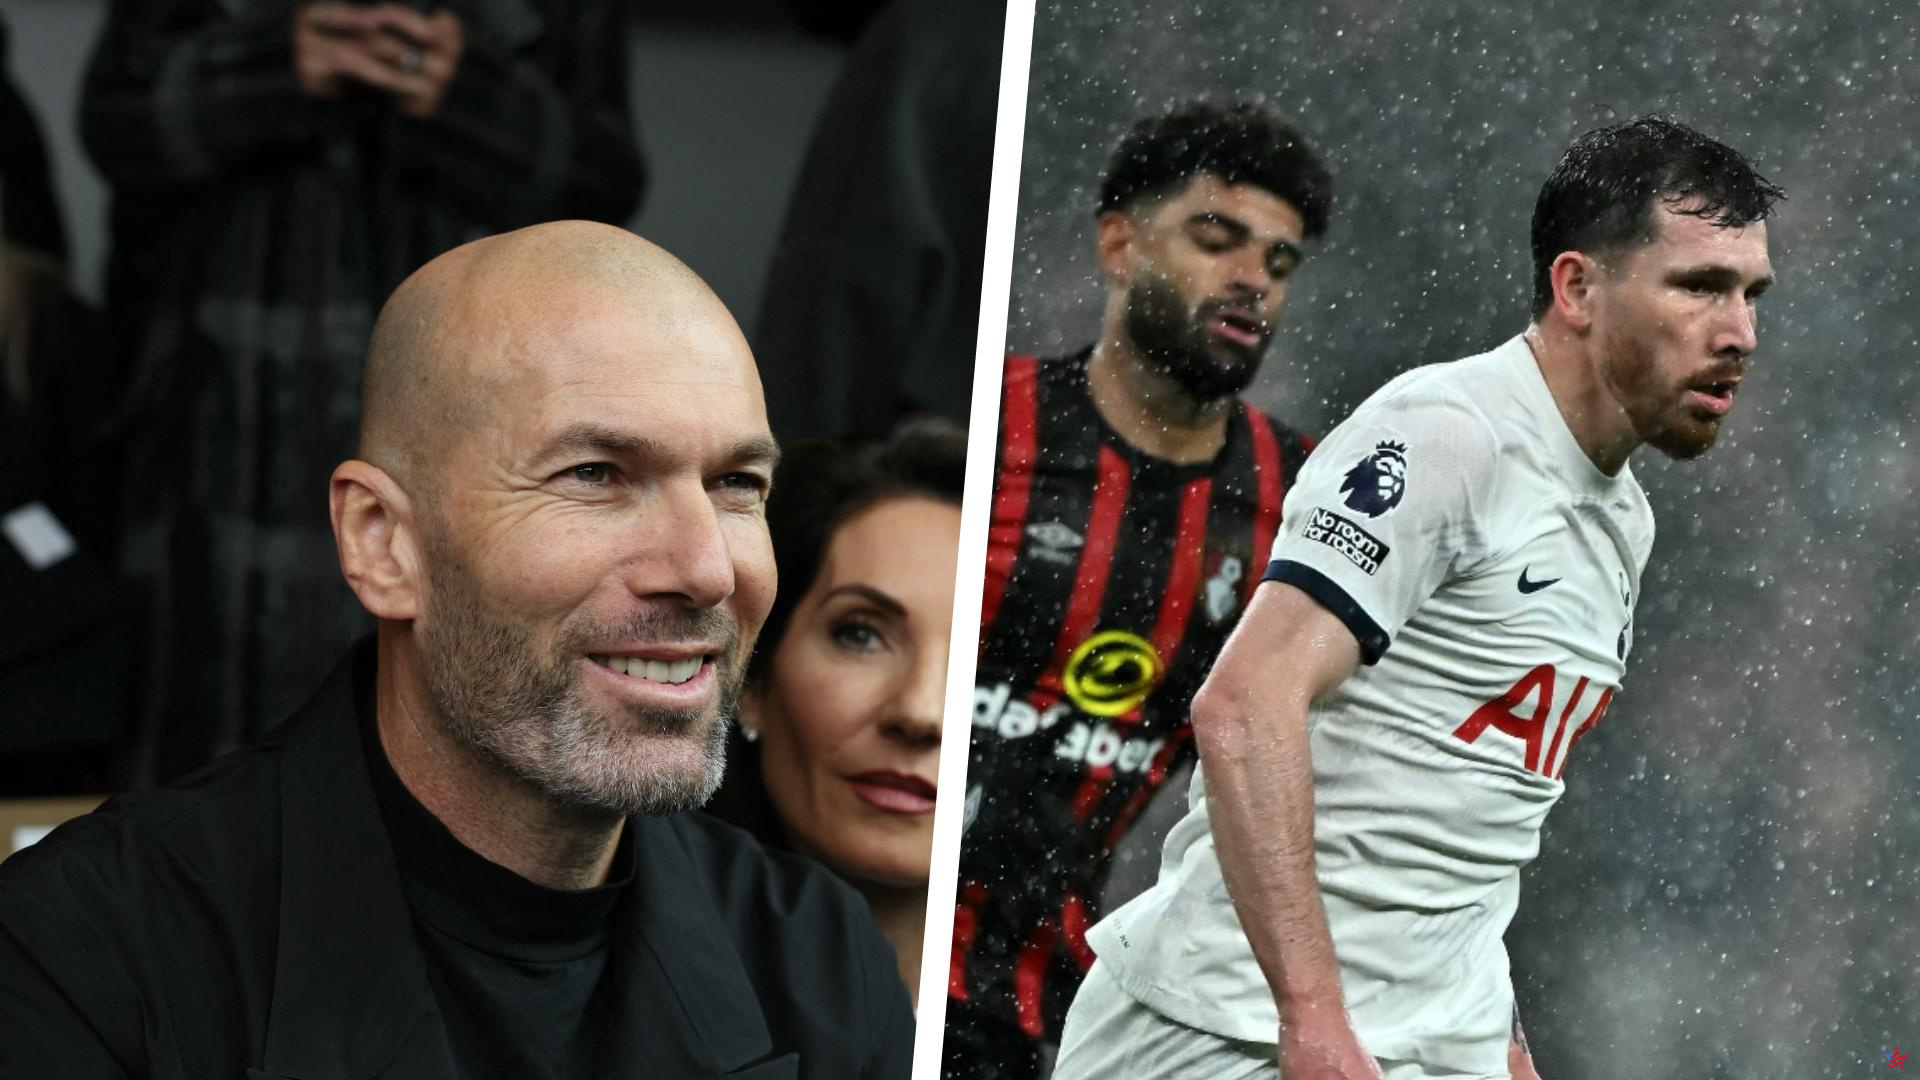 Zidane rechaza Argelia, el Lyon vuelve a fracasar... actualización sobre el mercado de fichajes al mediodía